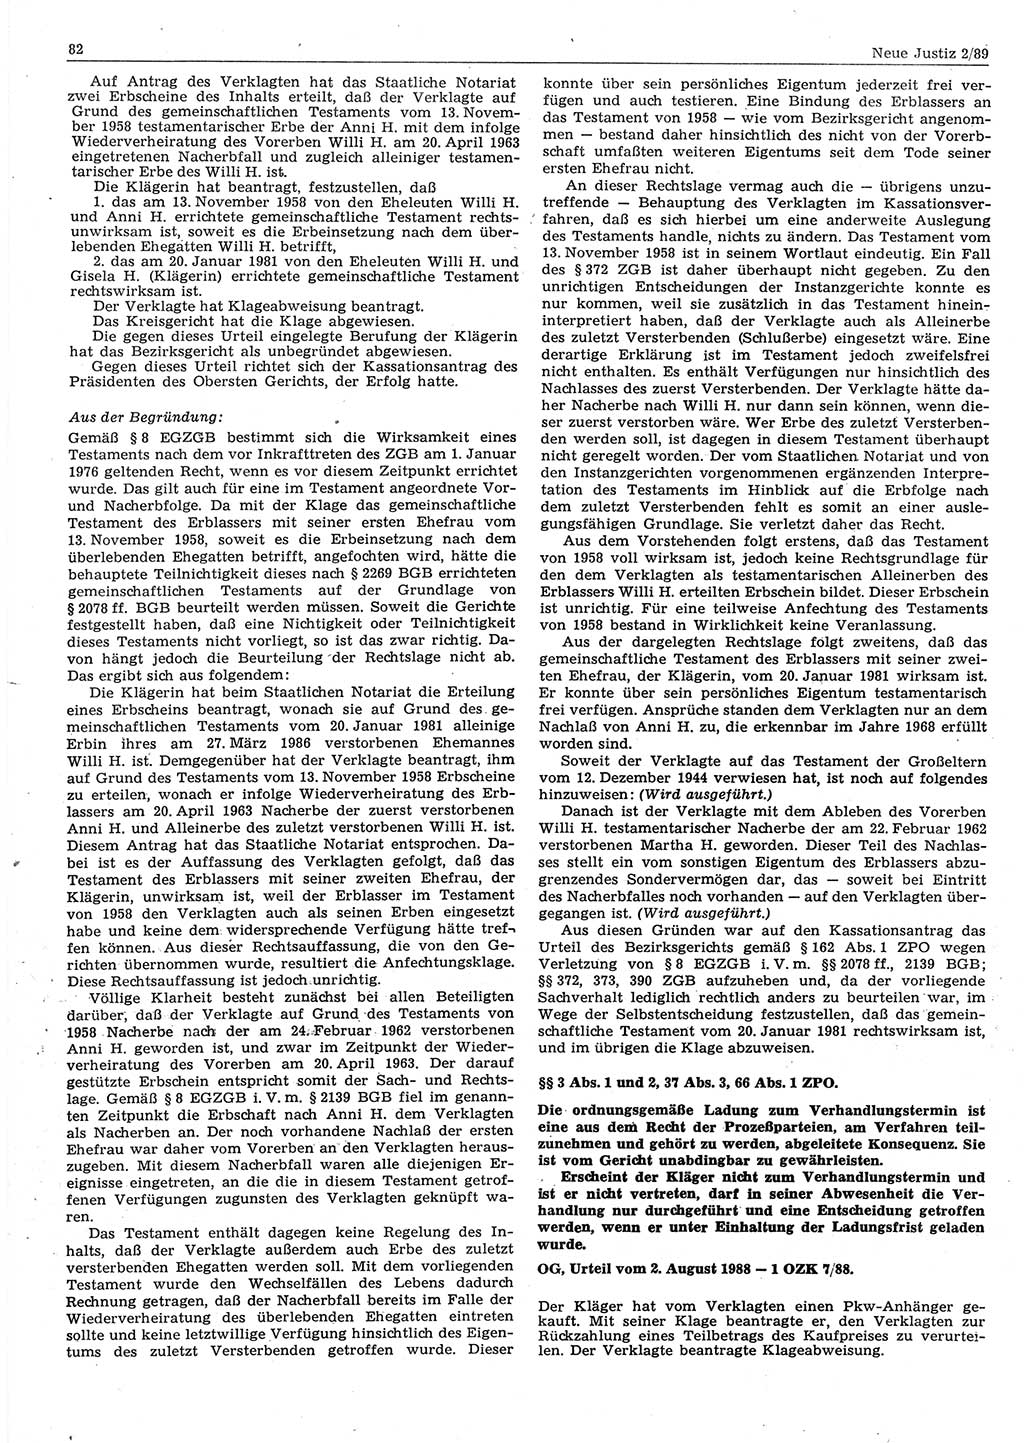 Neue Justiz (NJ), Zeitschrift für sozialistisches Recht und Gesetzlichkeit [Deutsche Demokratische Republik (DDR)], 43. Jahrgang 1989, Seite 82 (NJ DDR 1989, S. 82)